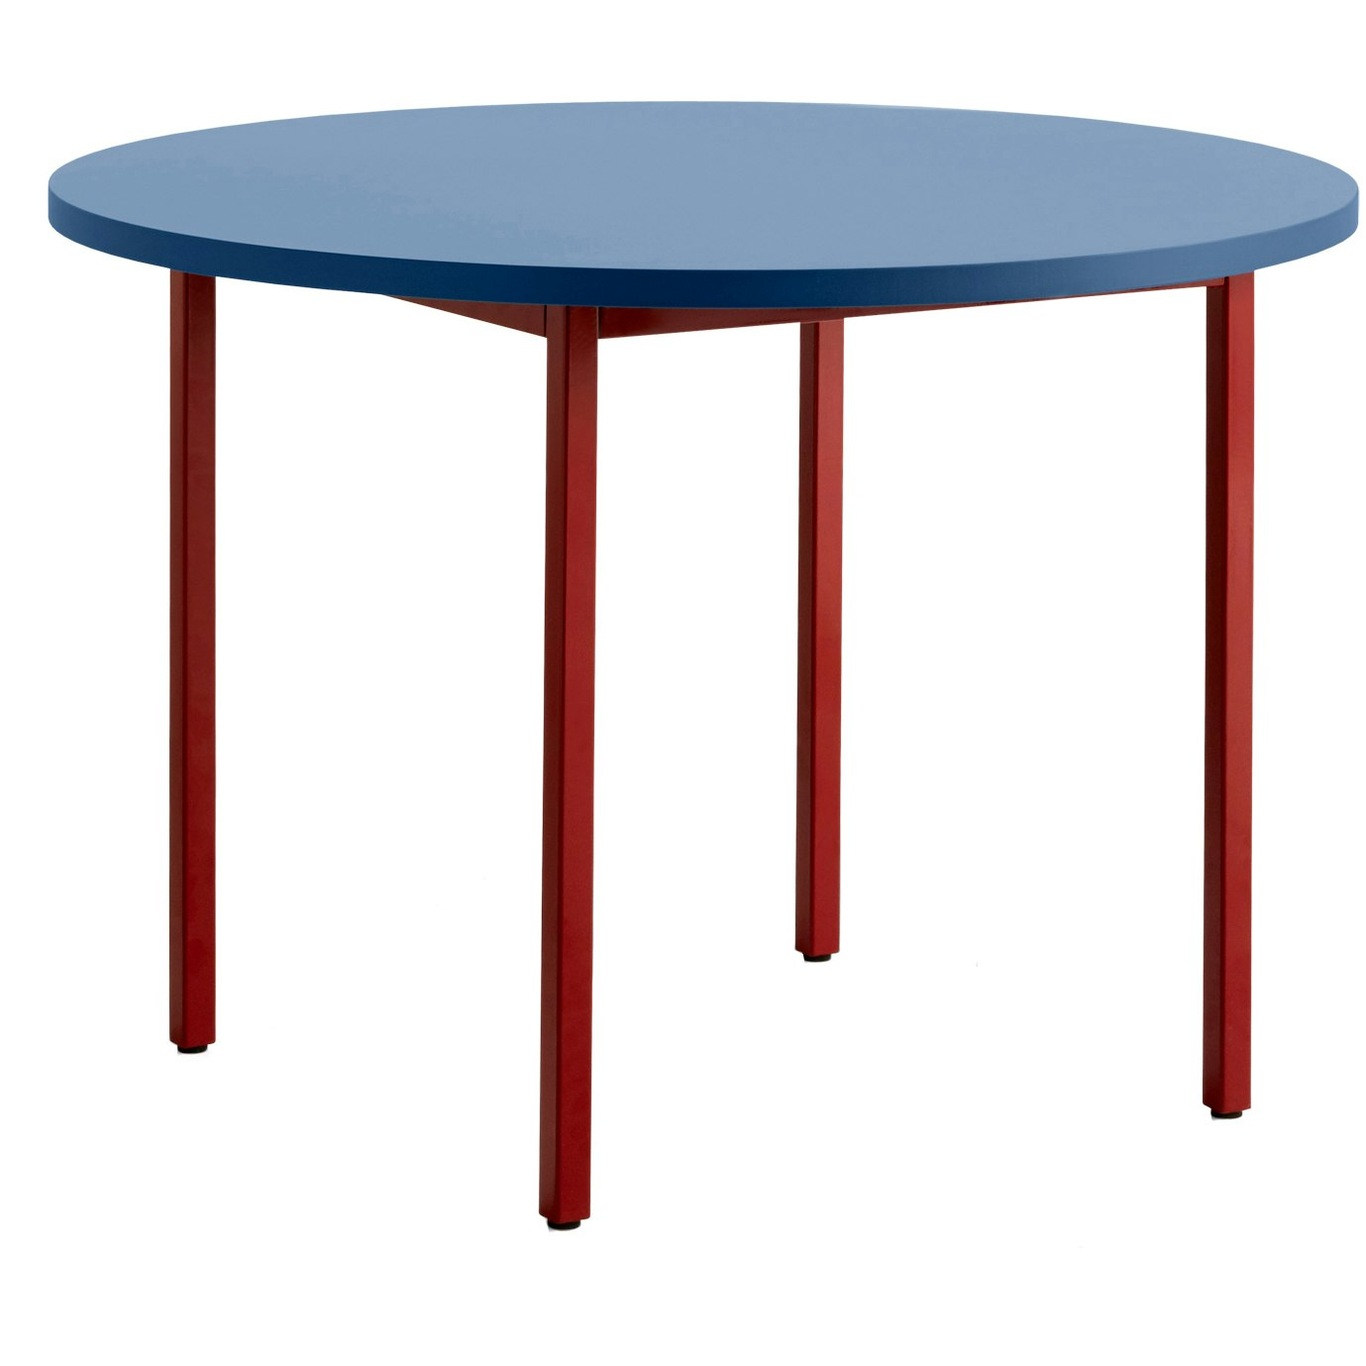 Two-Colour Pöytä Ø105 cm, Viininpunainen / Sininen